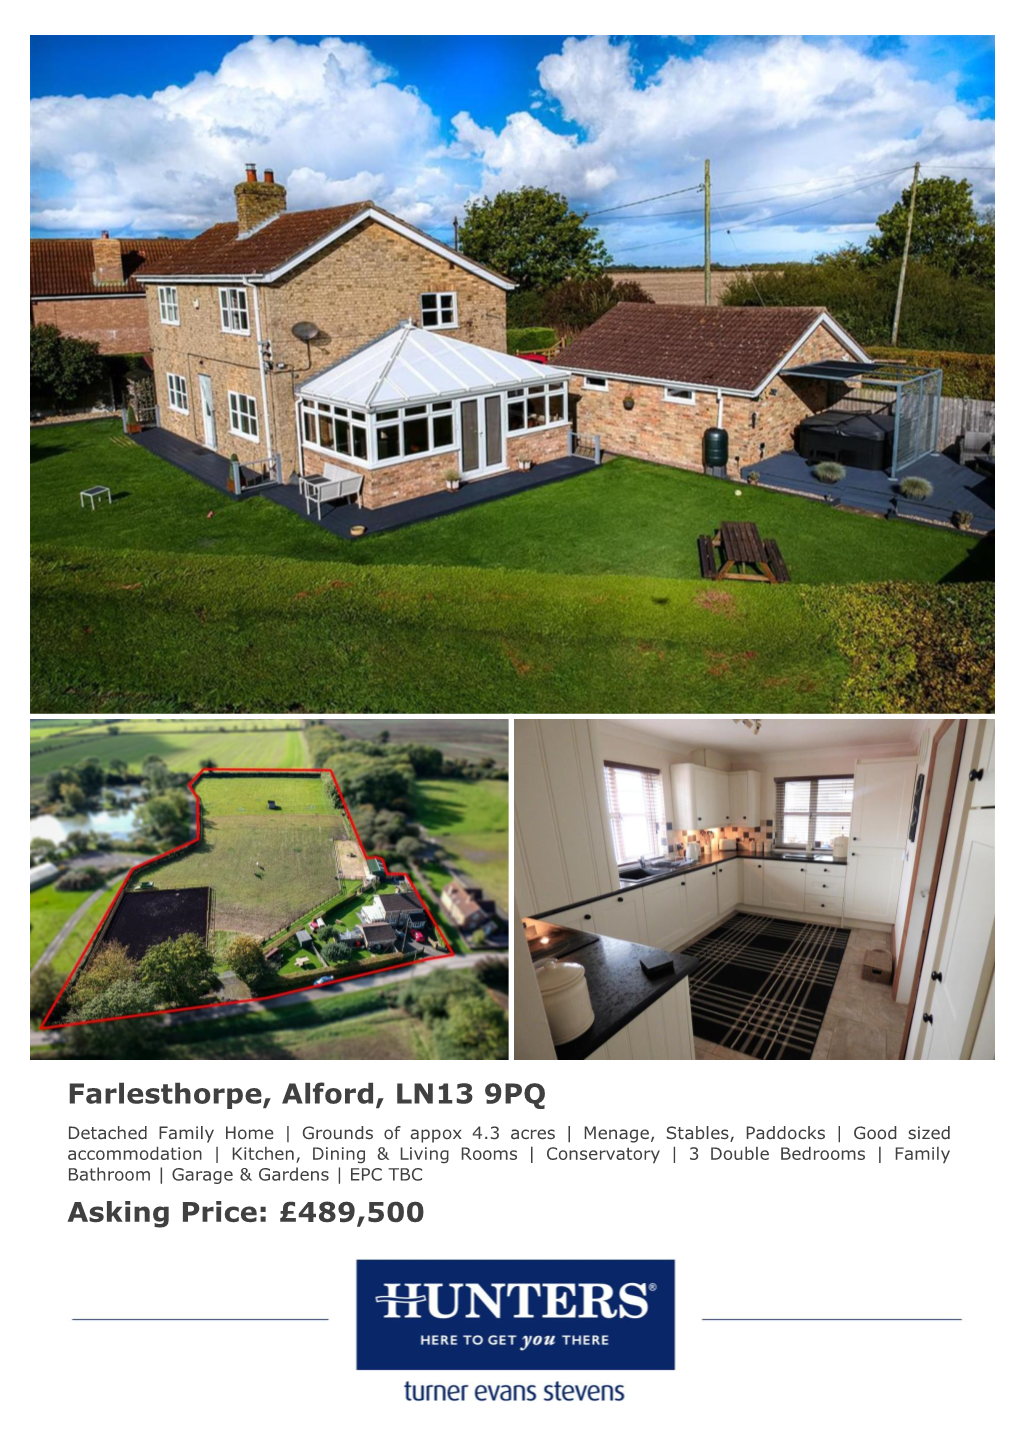 Farlesthorpe, Alford, LN13 9PQ Asking Price: £489,500